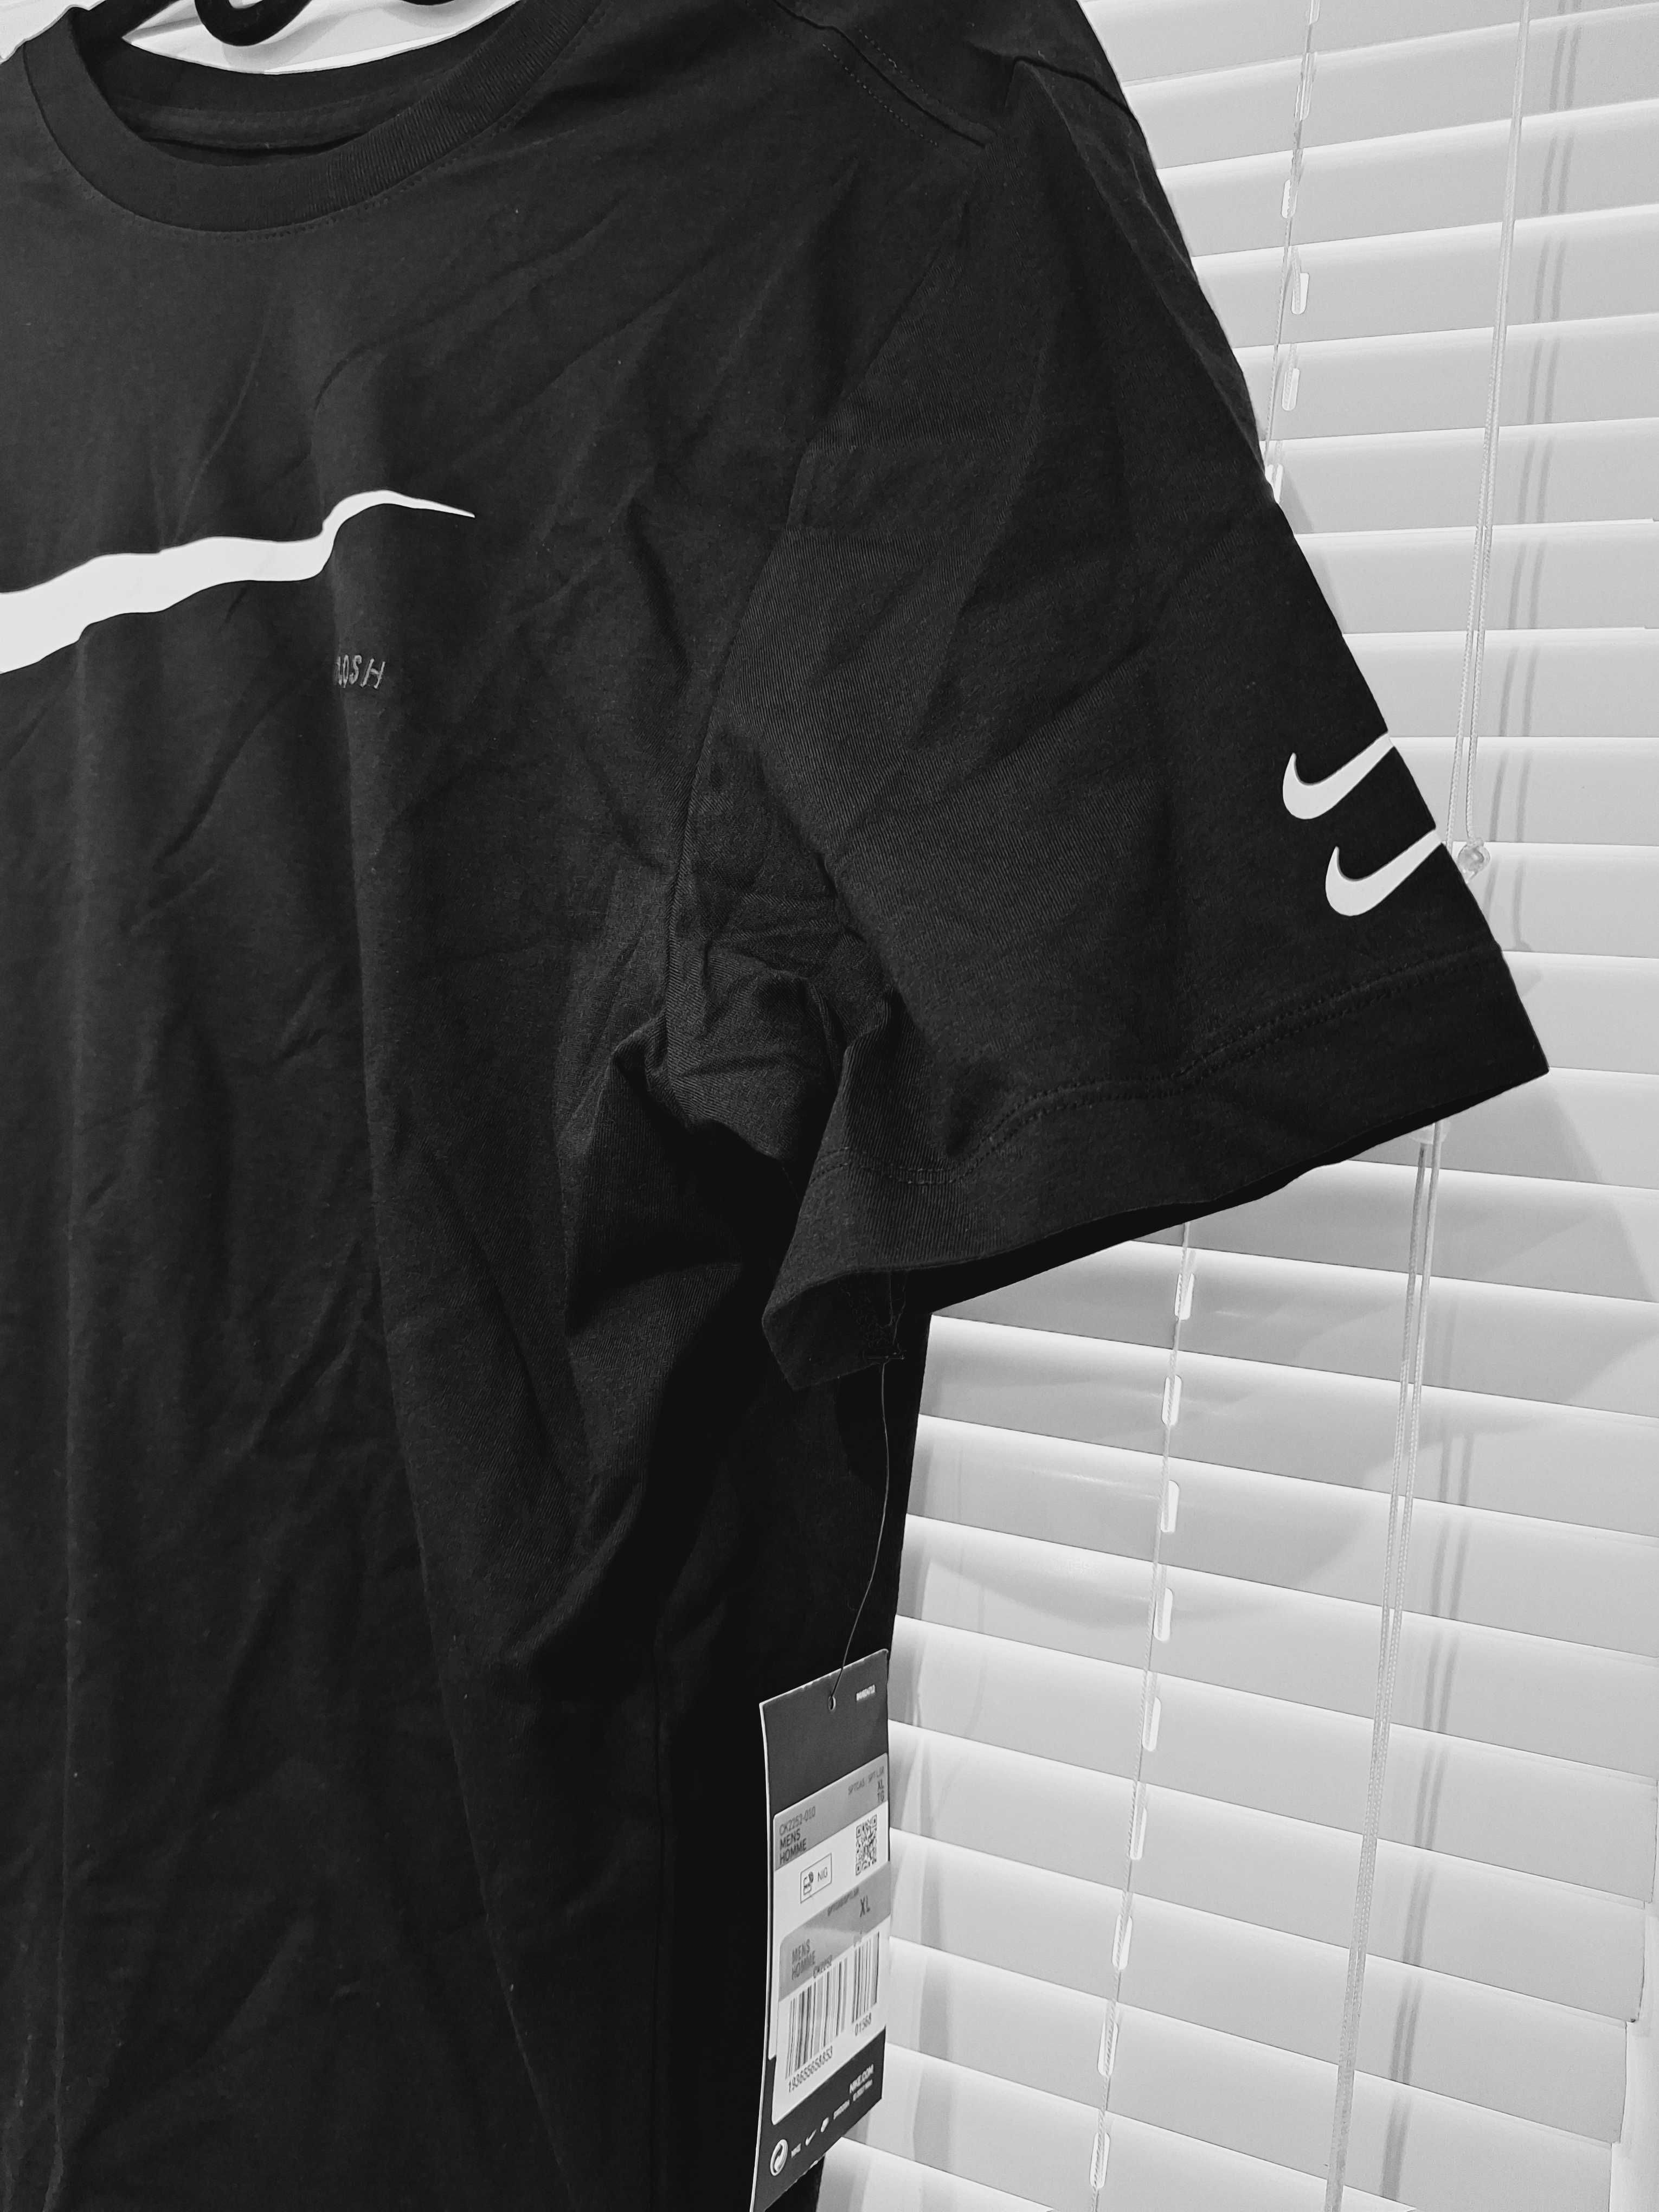 nowy oryginalny podkoszulek/t-shirt Nike TEE r.XL czarny